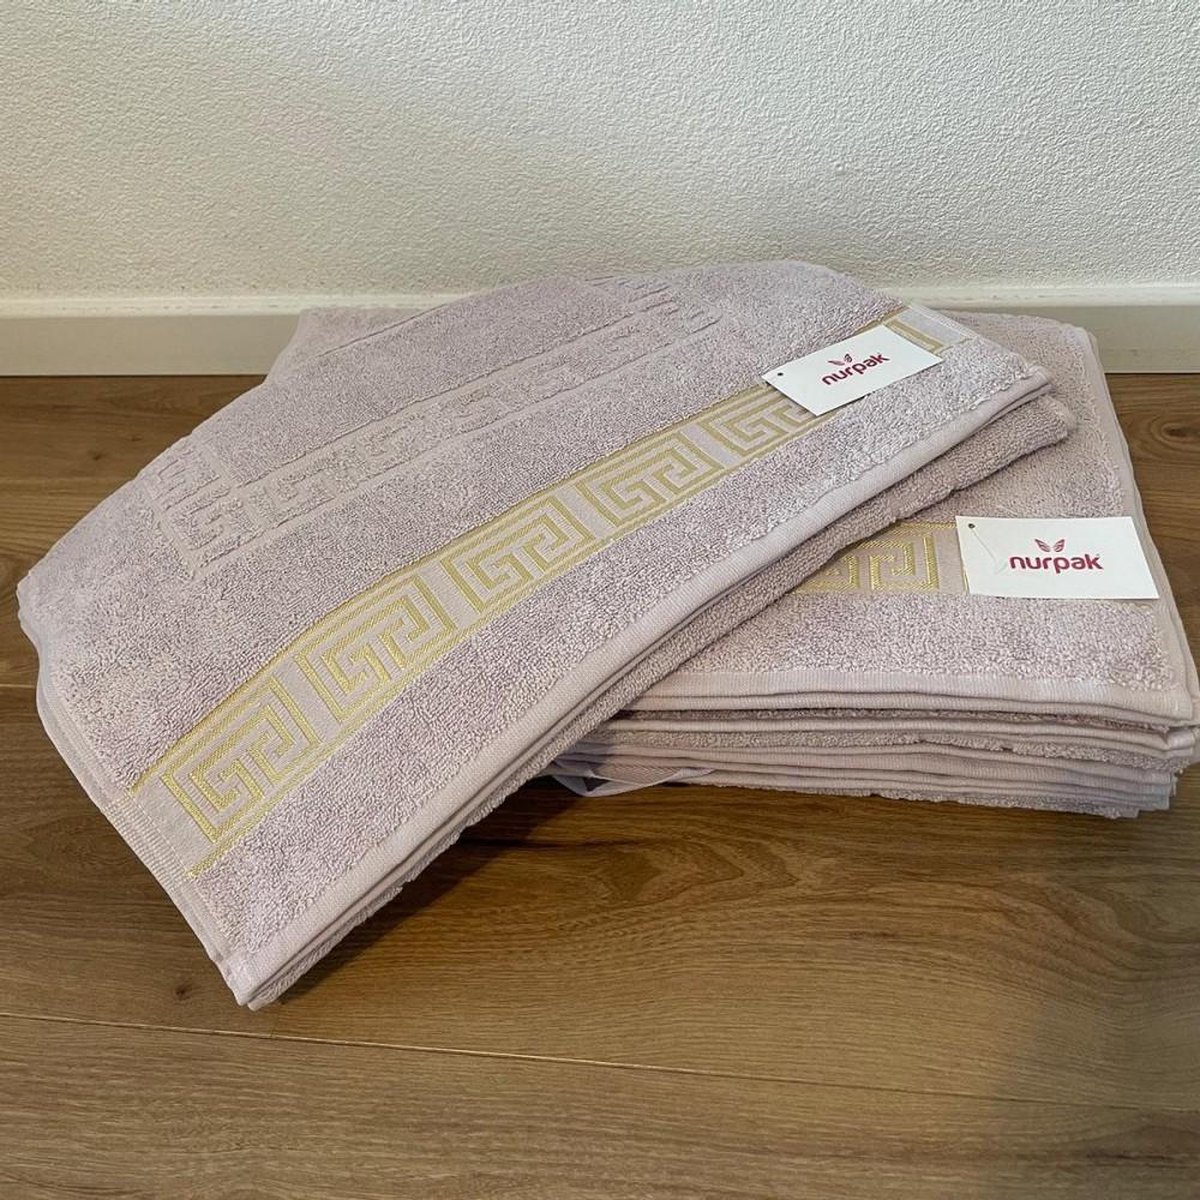 Handdoek set Roze en Wit combinatie - 4 stuks / Deren / Nurpak/ Zachte kleur-Elegant